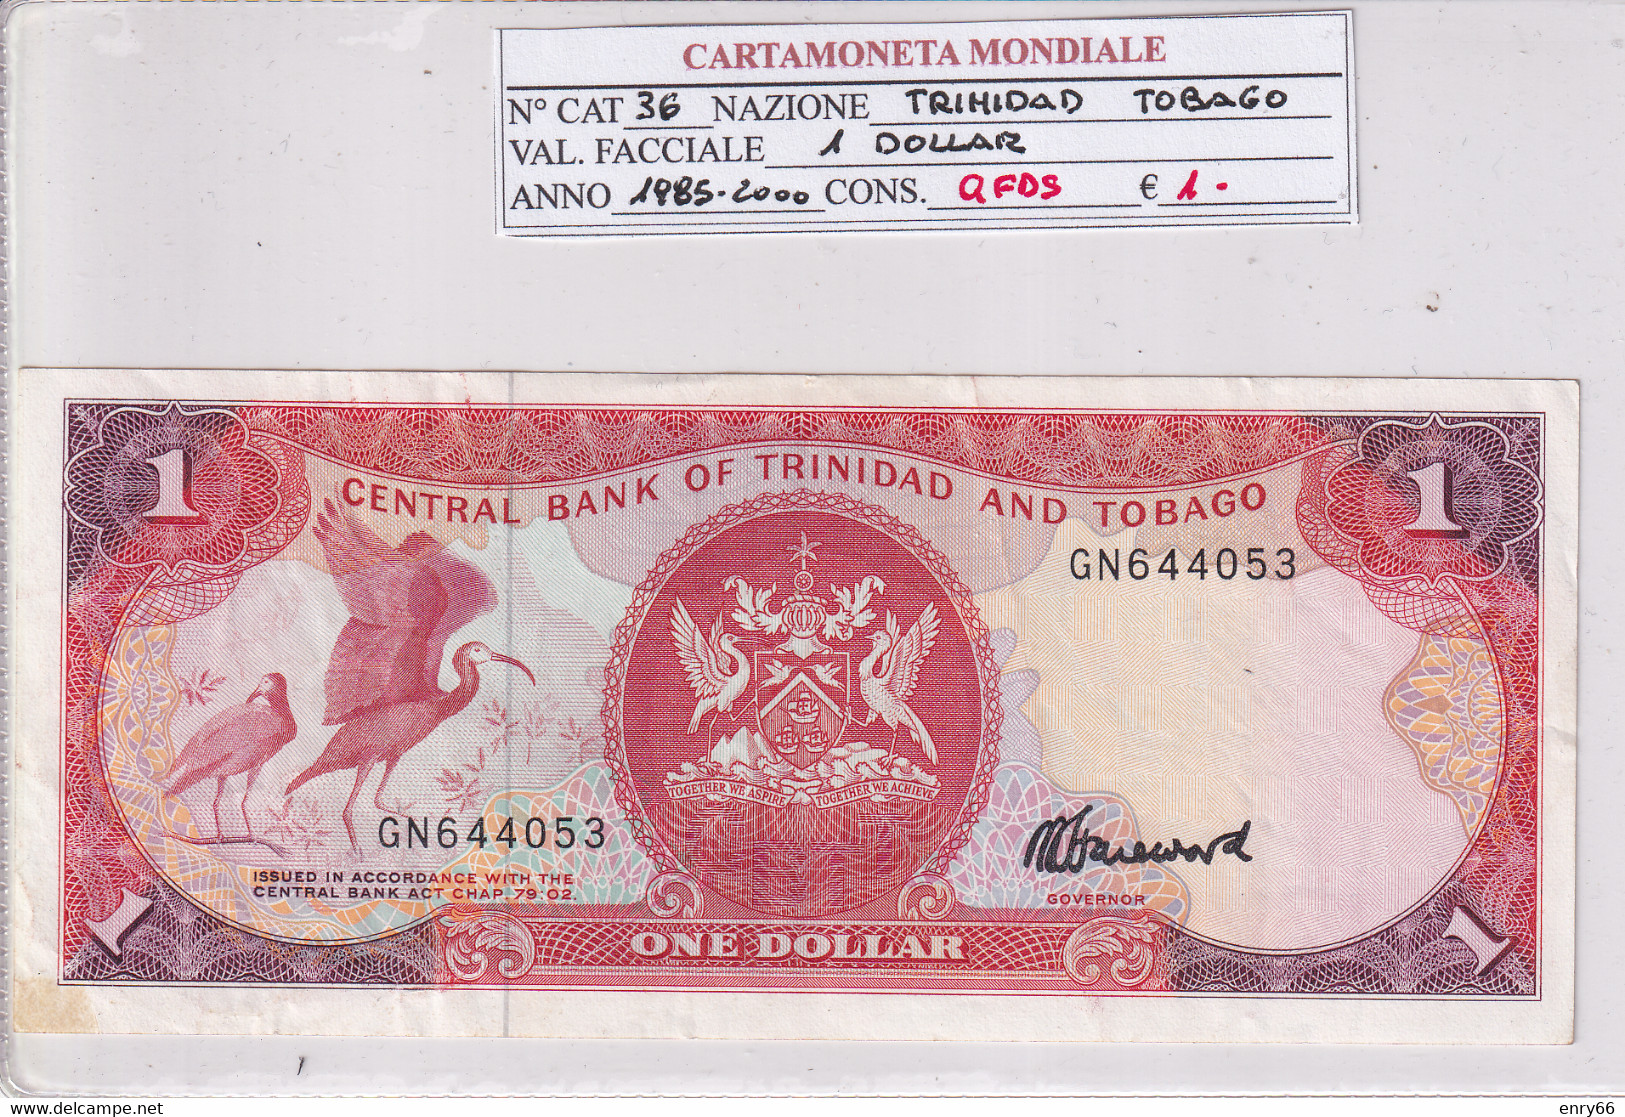 TRINIDAD E TOBAGO 1 DOLLAR 1985-2000 P36 - Trinidad & Tobago